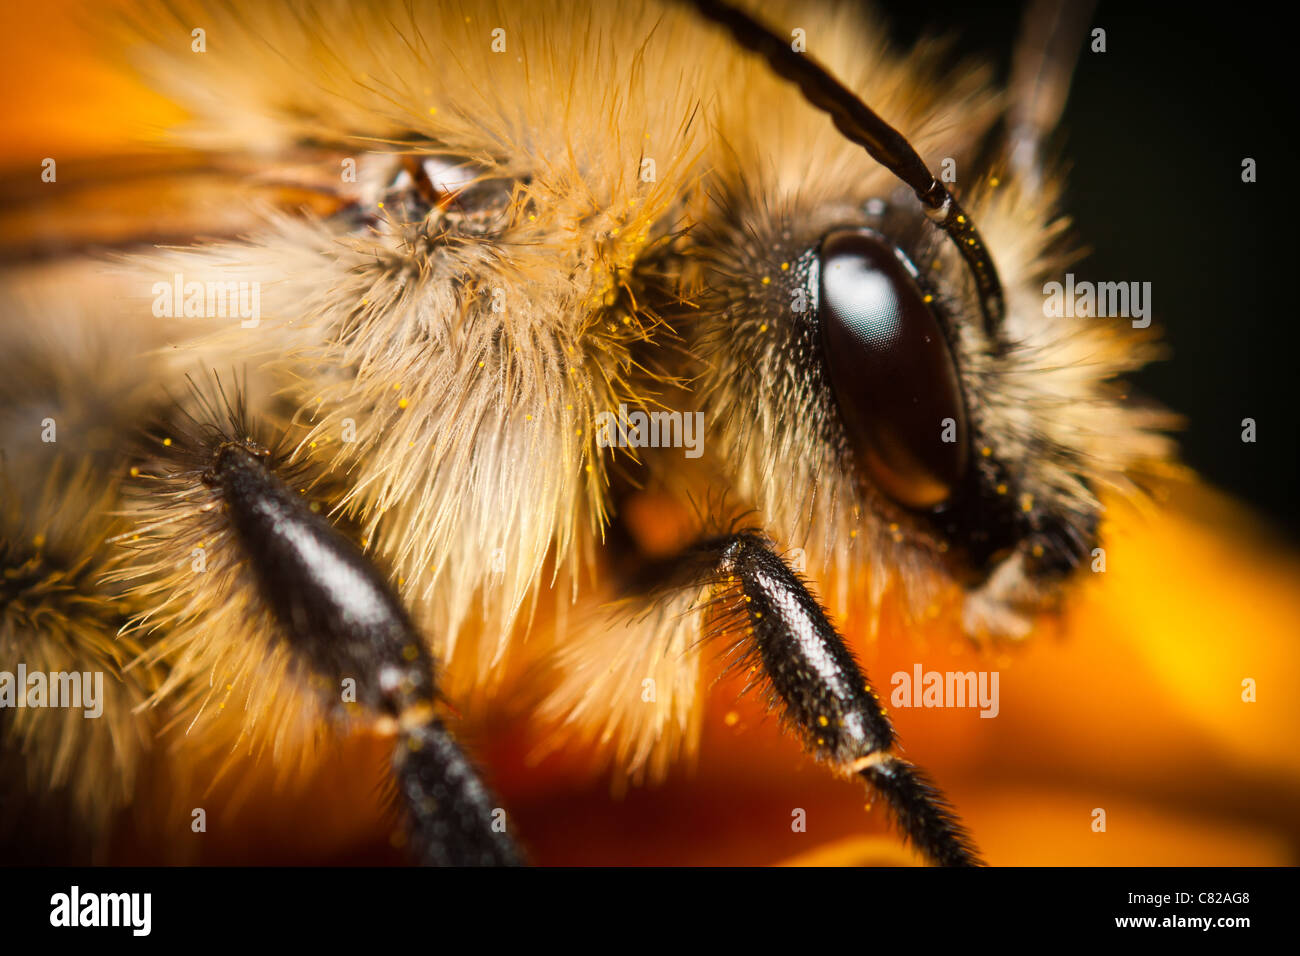 A honey bee. Stock Photo